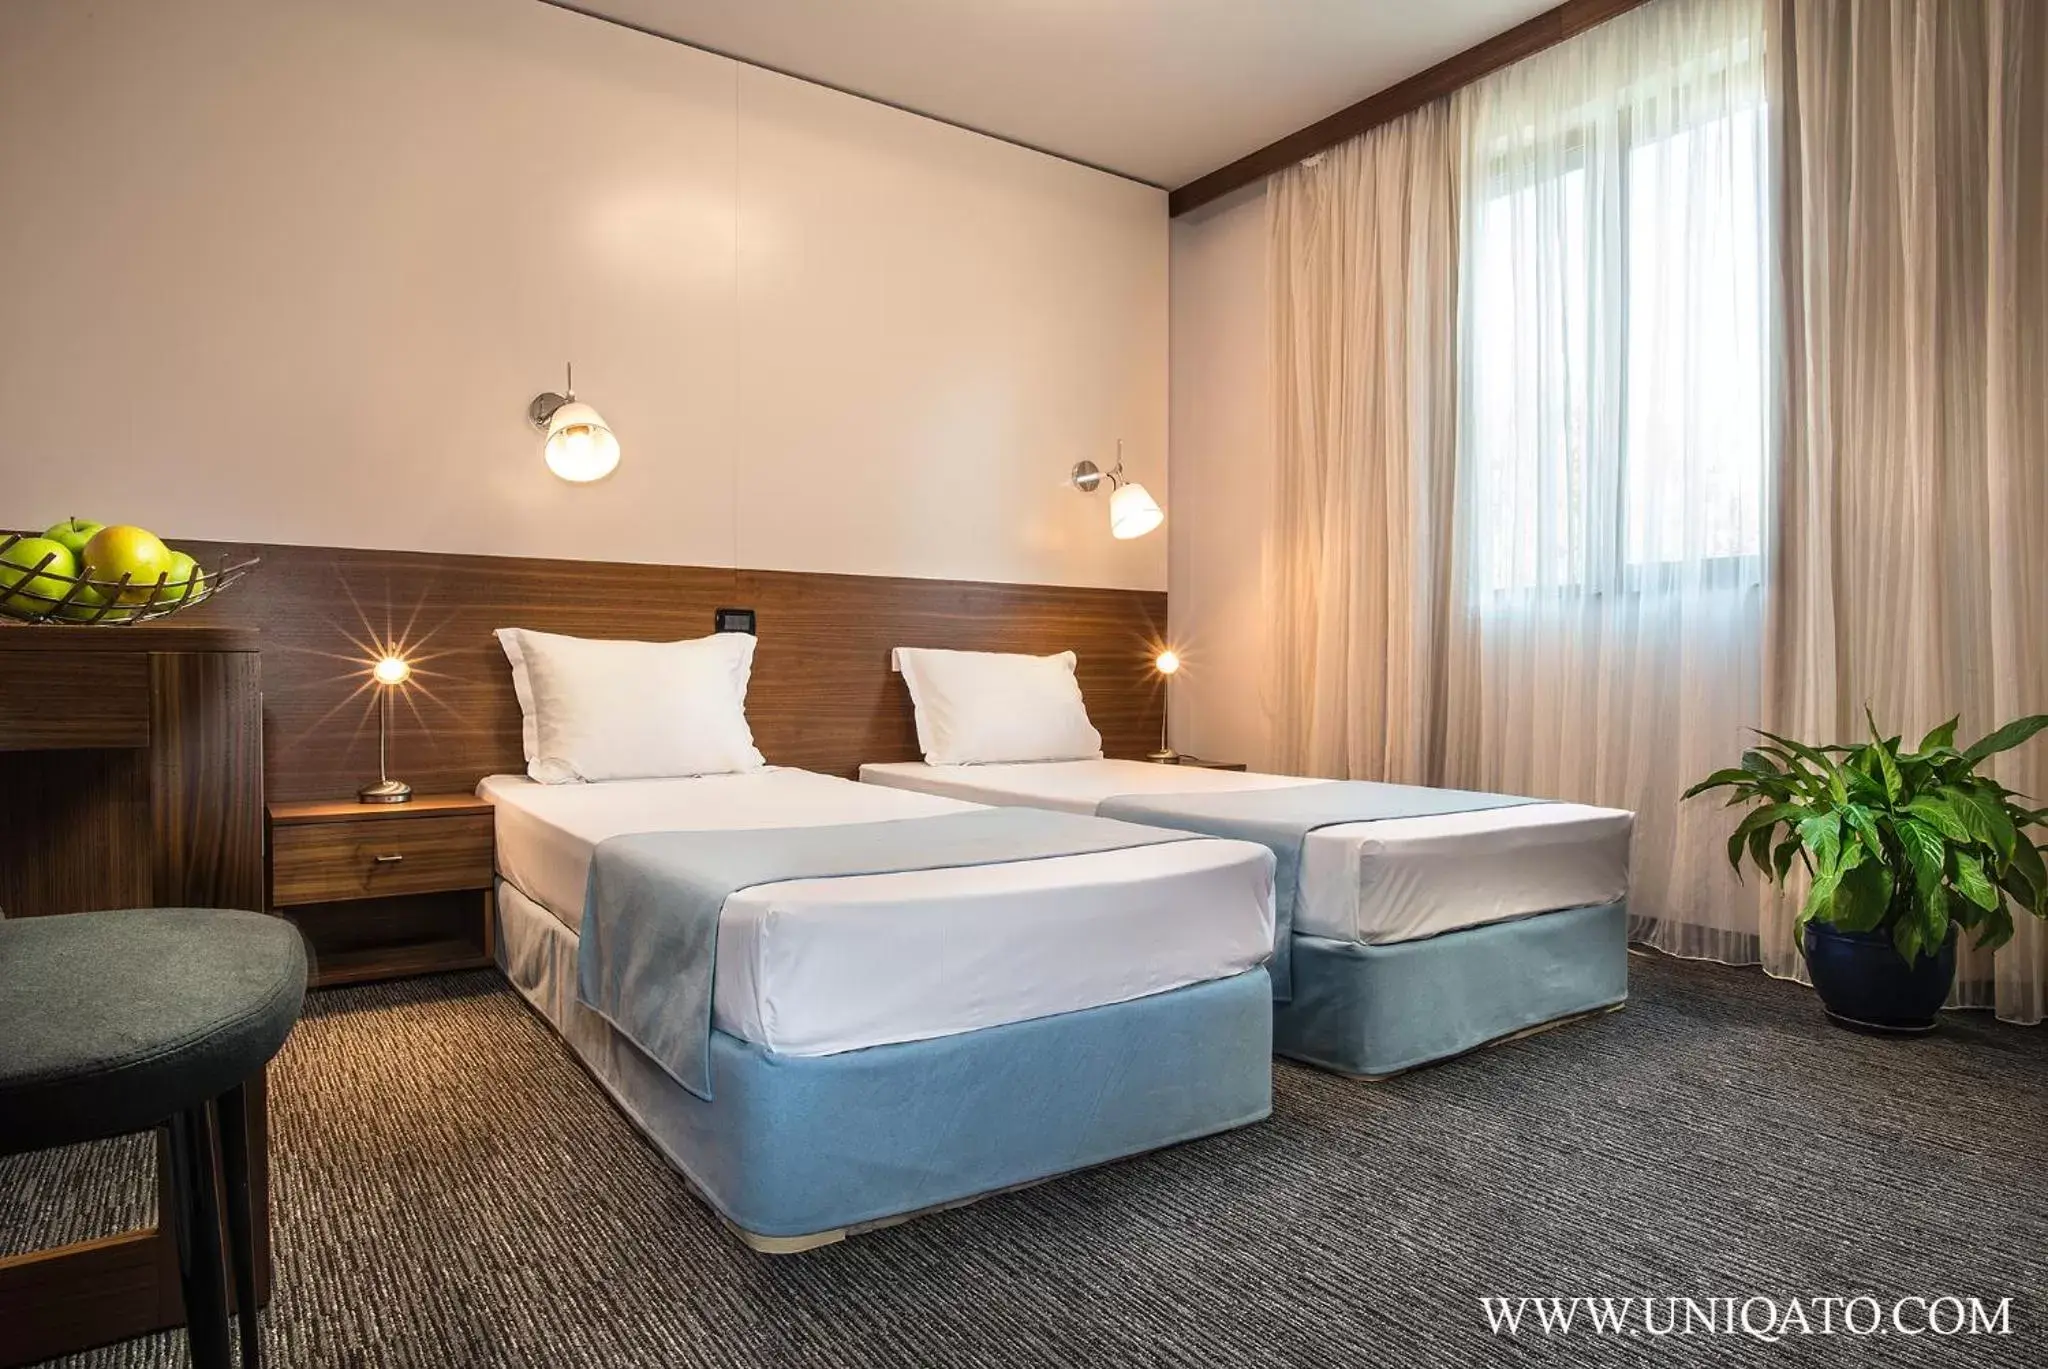 Bed in Uniqato Hotel